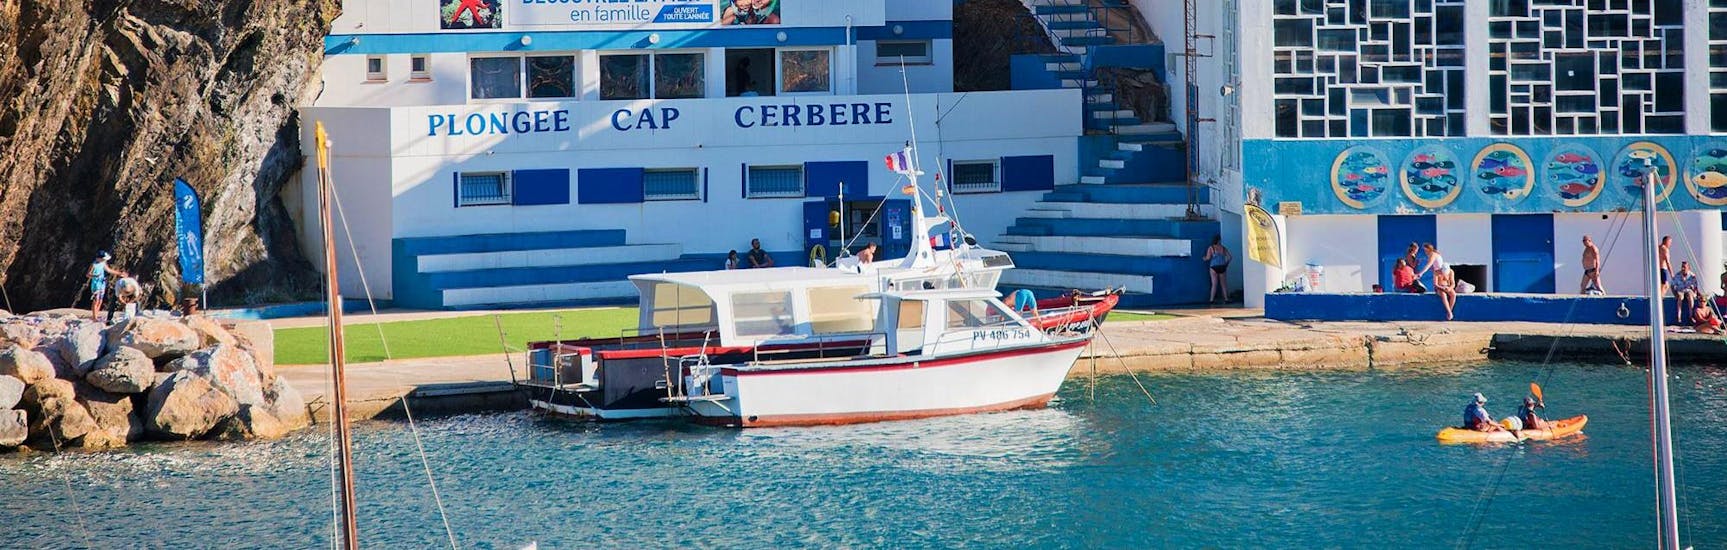 Le bateau de Plongée Cap Cerbère emmène des touristes pour l'activité Snorkeling dans la réserve marine de Cerbère-Banyuls.